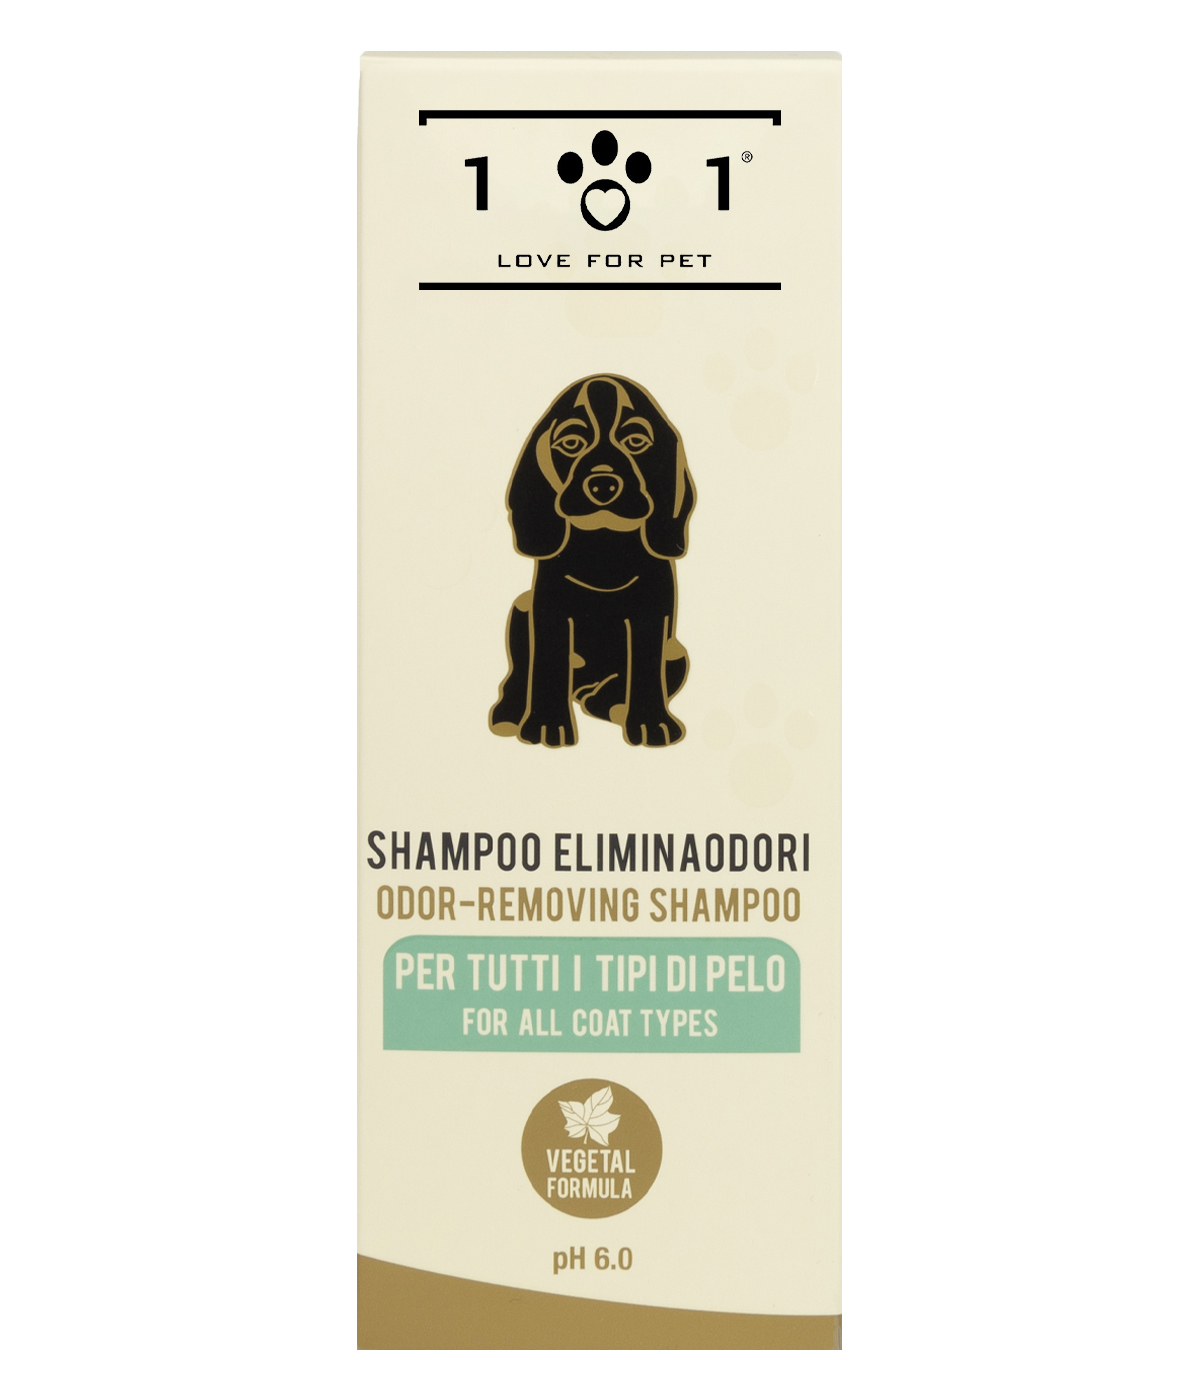 Shampoo elimina odori per cani - 250 ml